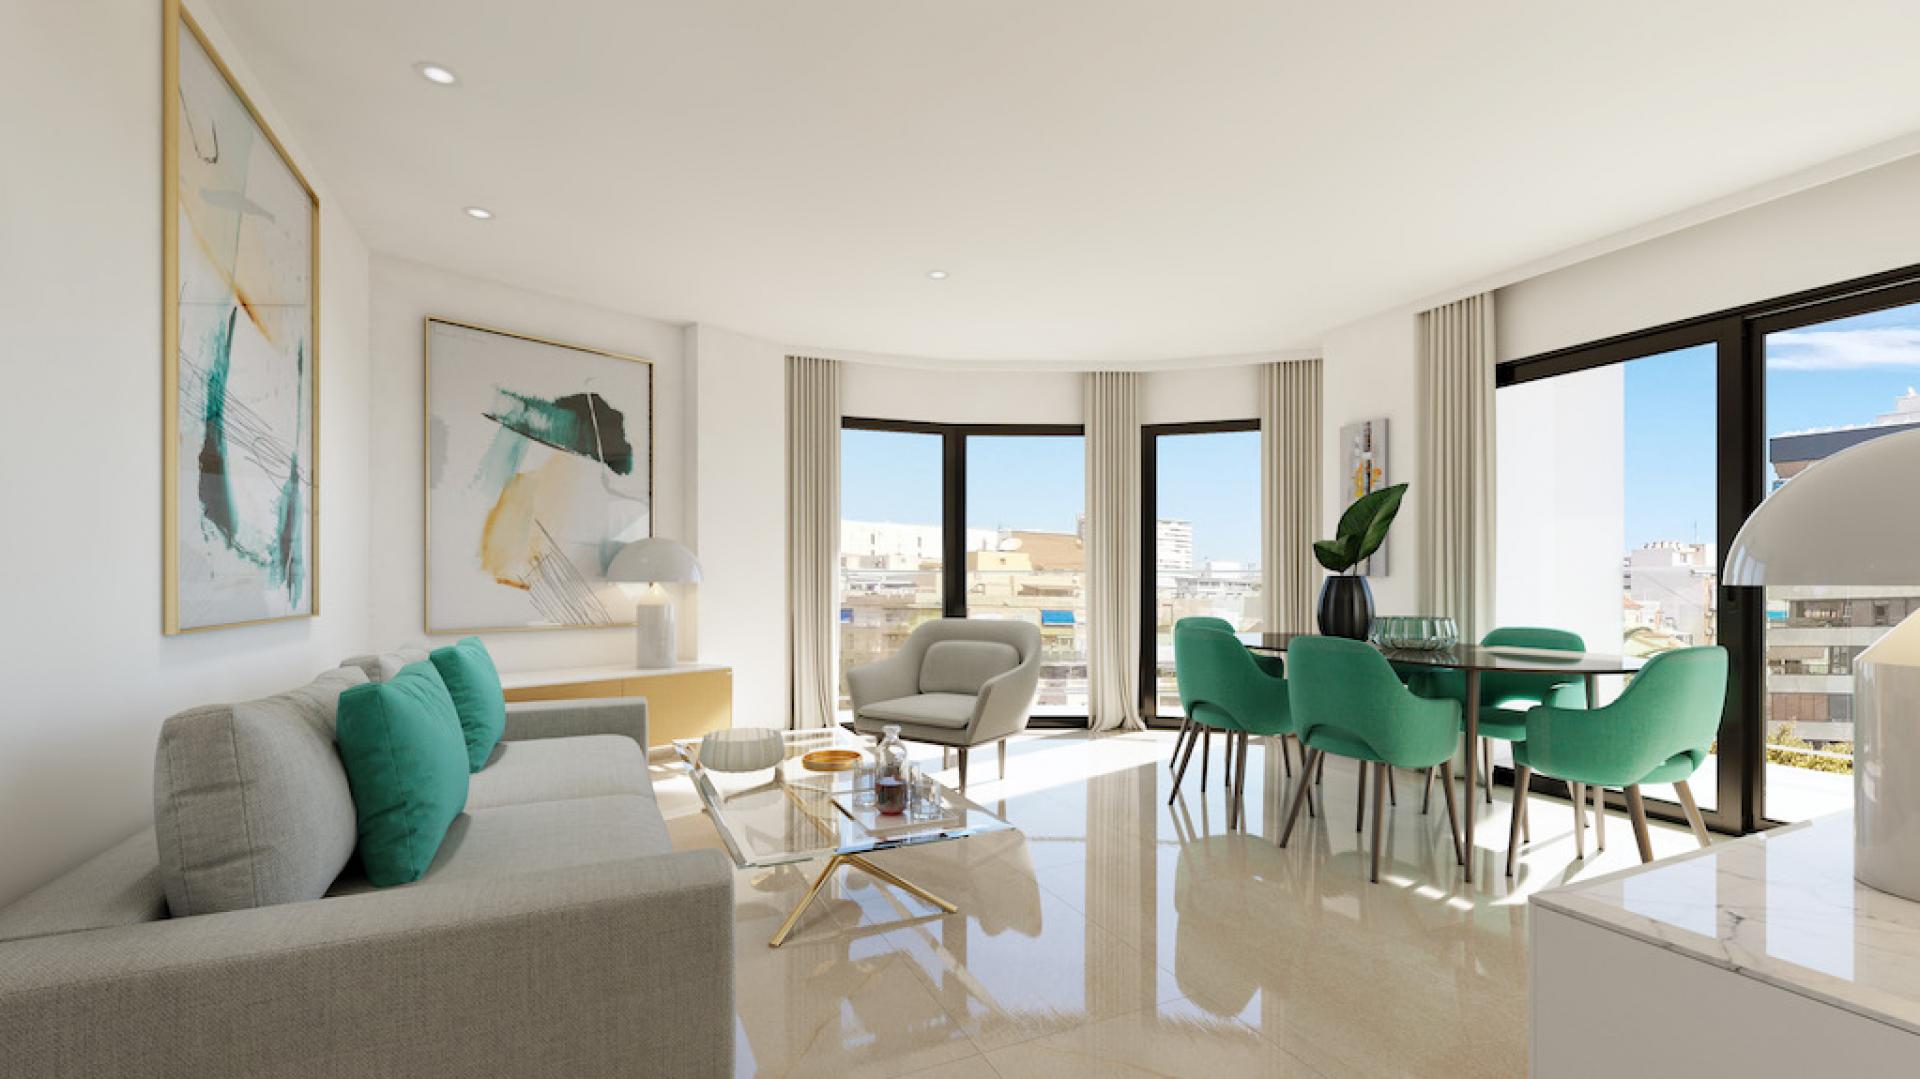 2 slaapkamer Appartement met terras in Alicante - Nieuwbouw in Medvilla Spanje